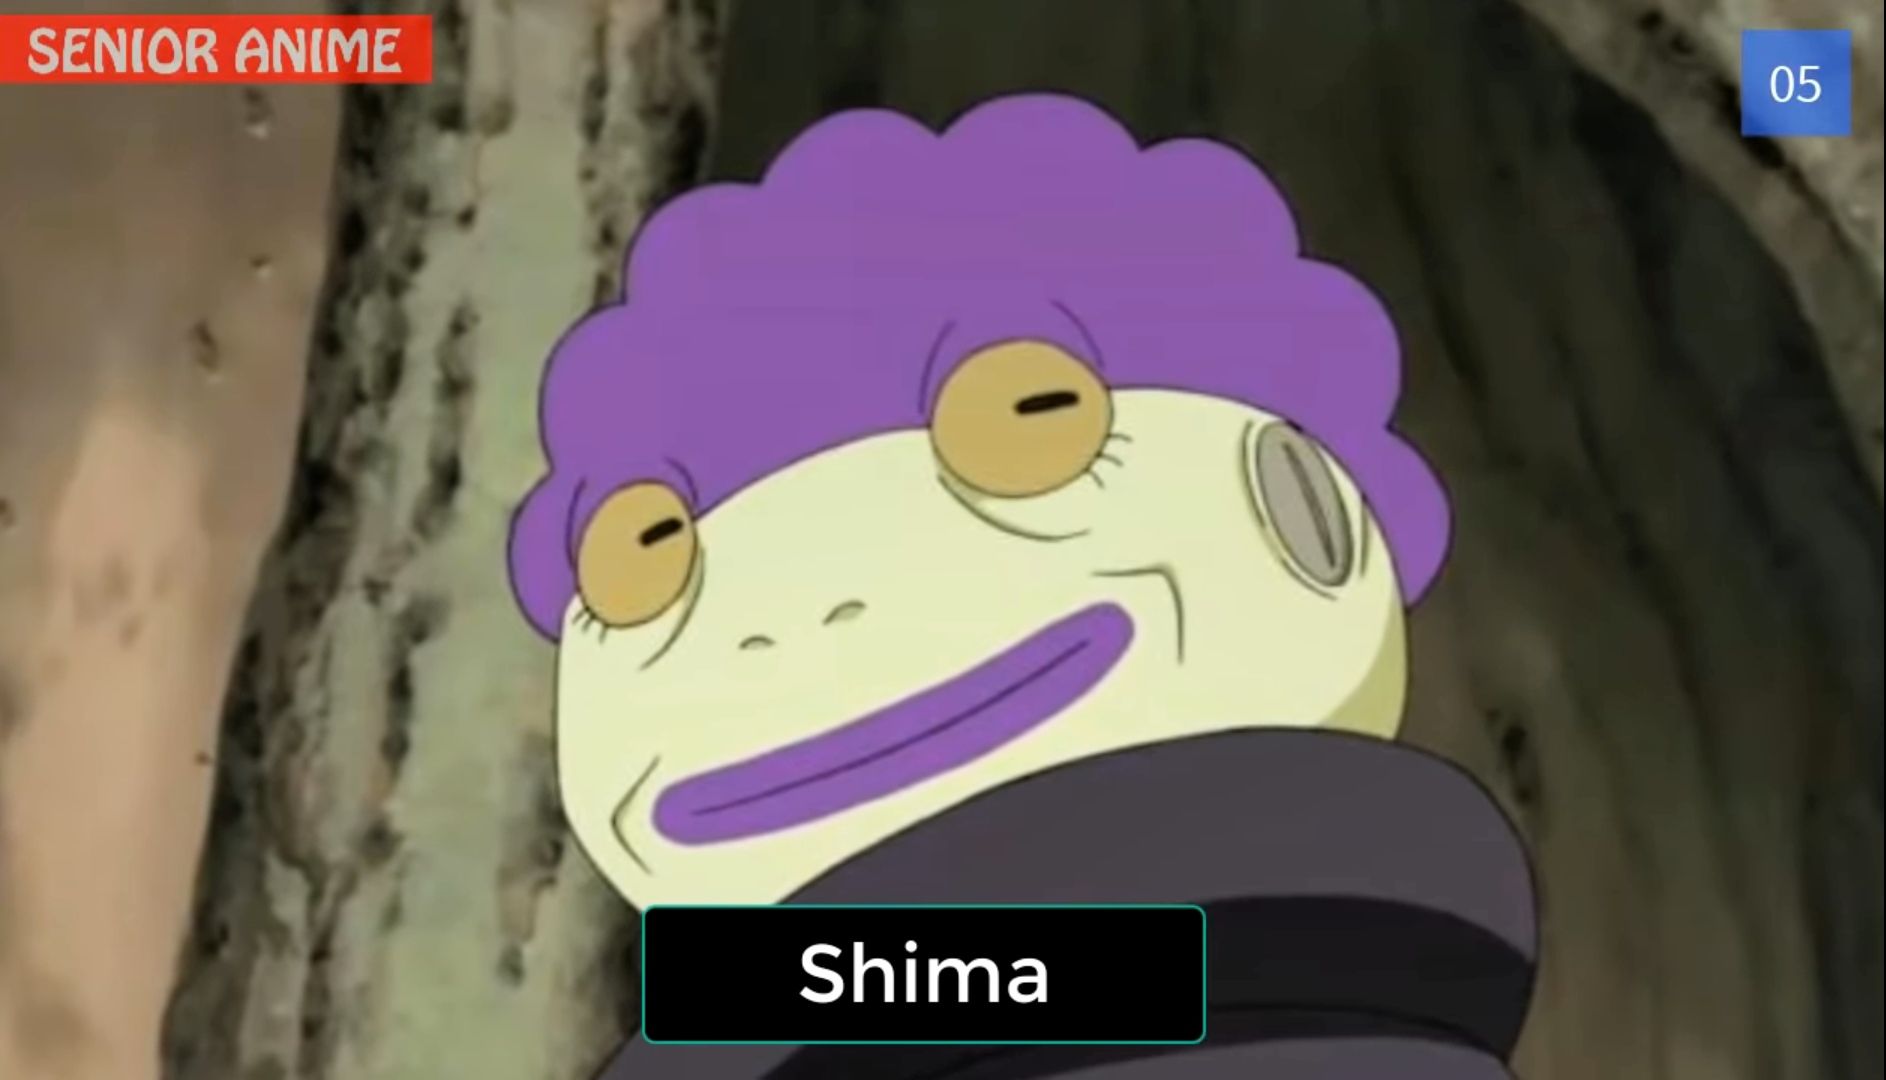 13 Karakter dan Shinobi Pengguna Jurus Sage Mode di Naruto dan Boruto, Karakter Hebat Dengan Kekuatan Alam